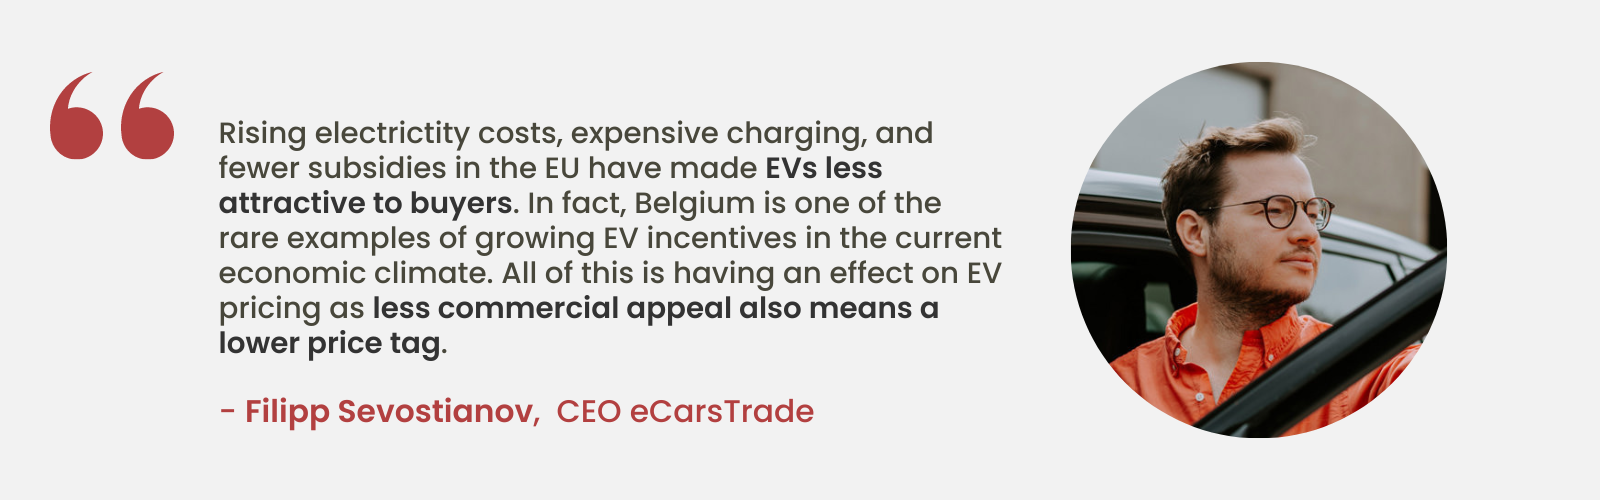 Odborný postřeh od Filippa Sevostianova, generálního ředitele společnosti eCarsTrade, o klesající atraktivitě elektromobilů v důsledku rostoucích nákladů a menšího počtu dotací v EU, což zdůrazňuje jedinečné postavení Belgie s rostoucími pobídkami pro elektromobily.